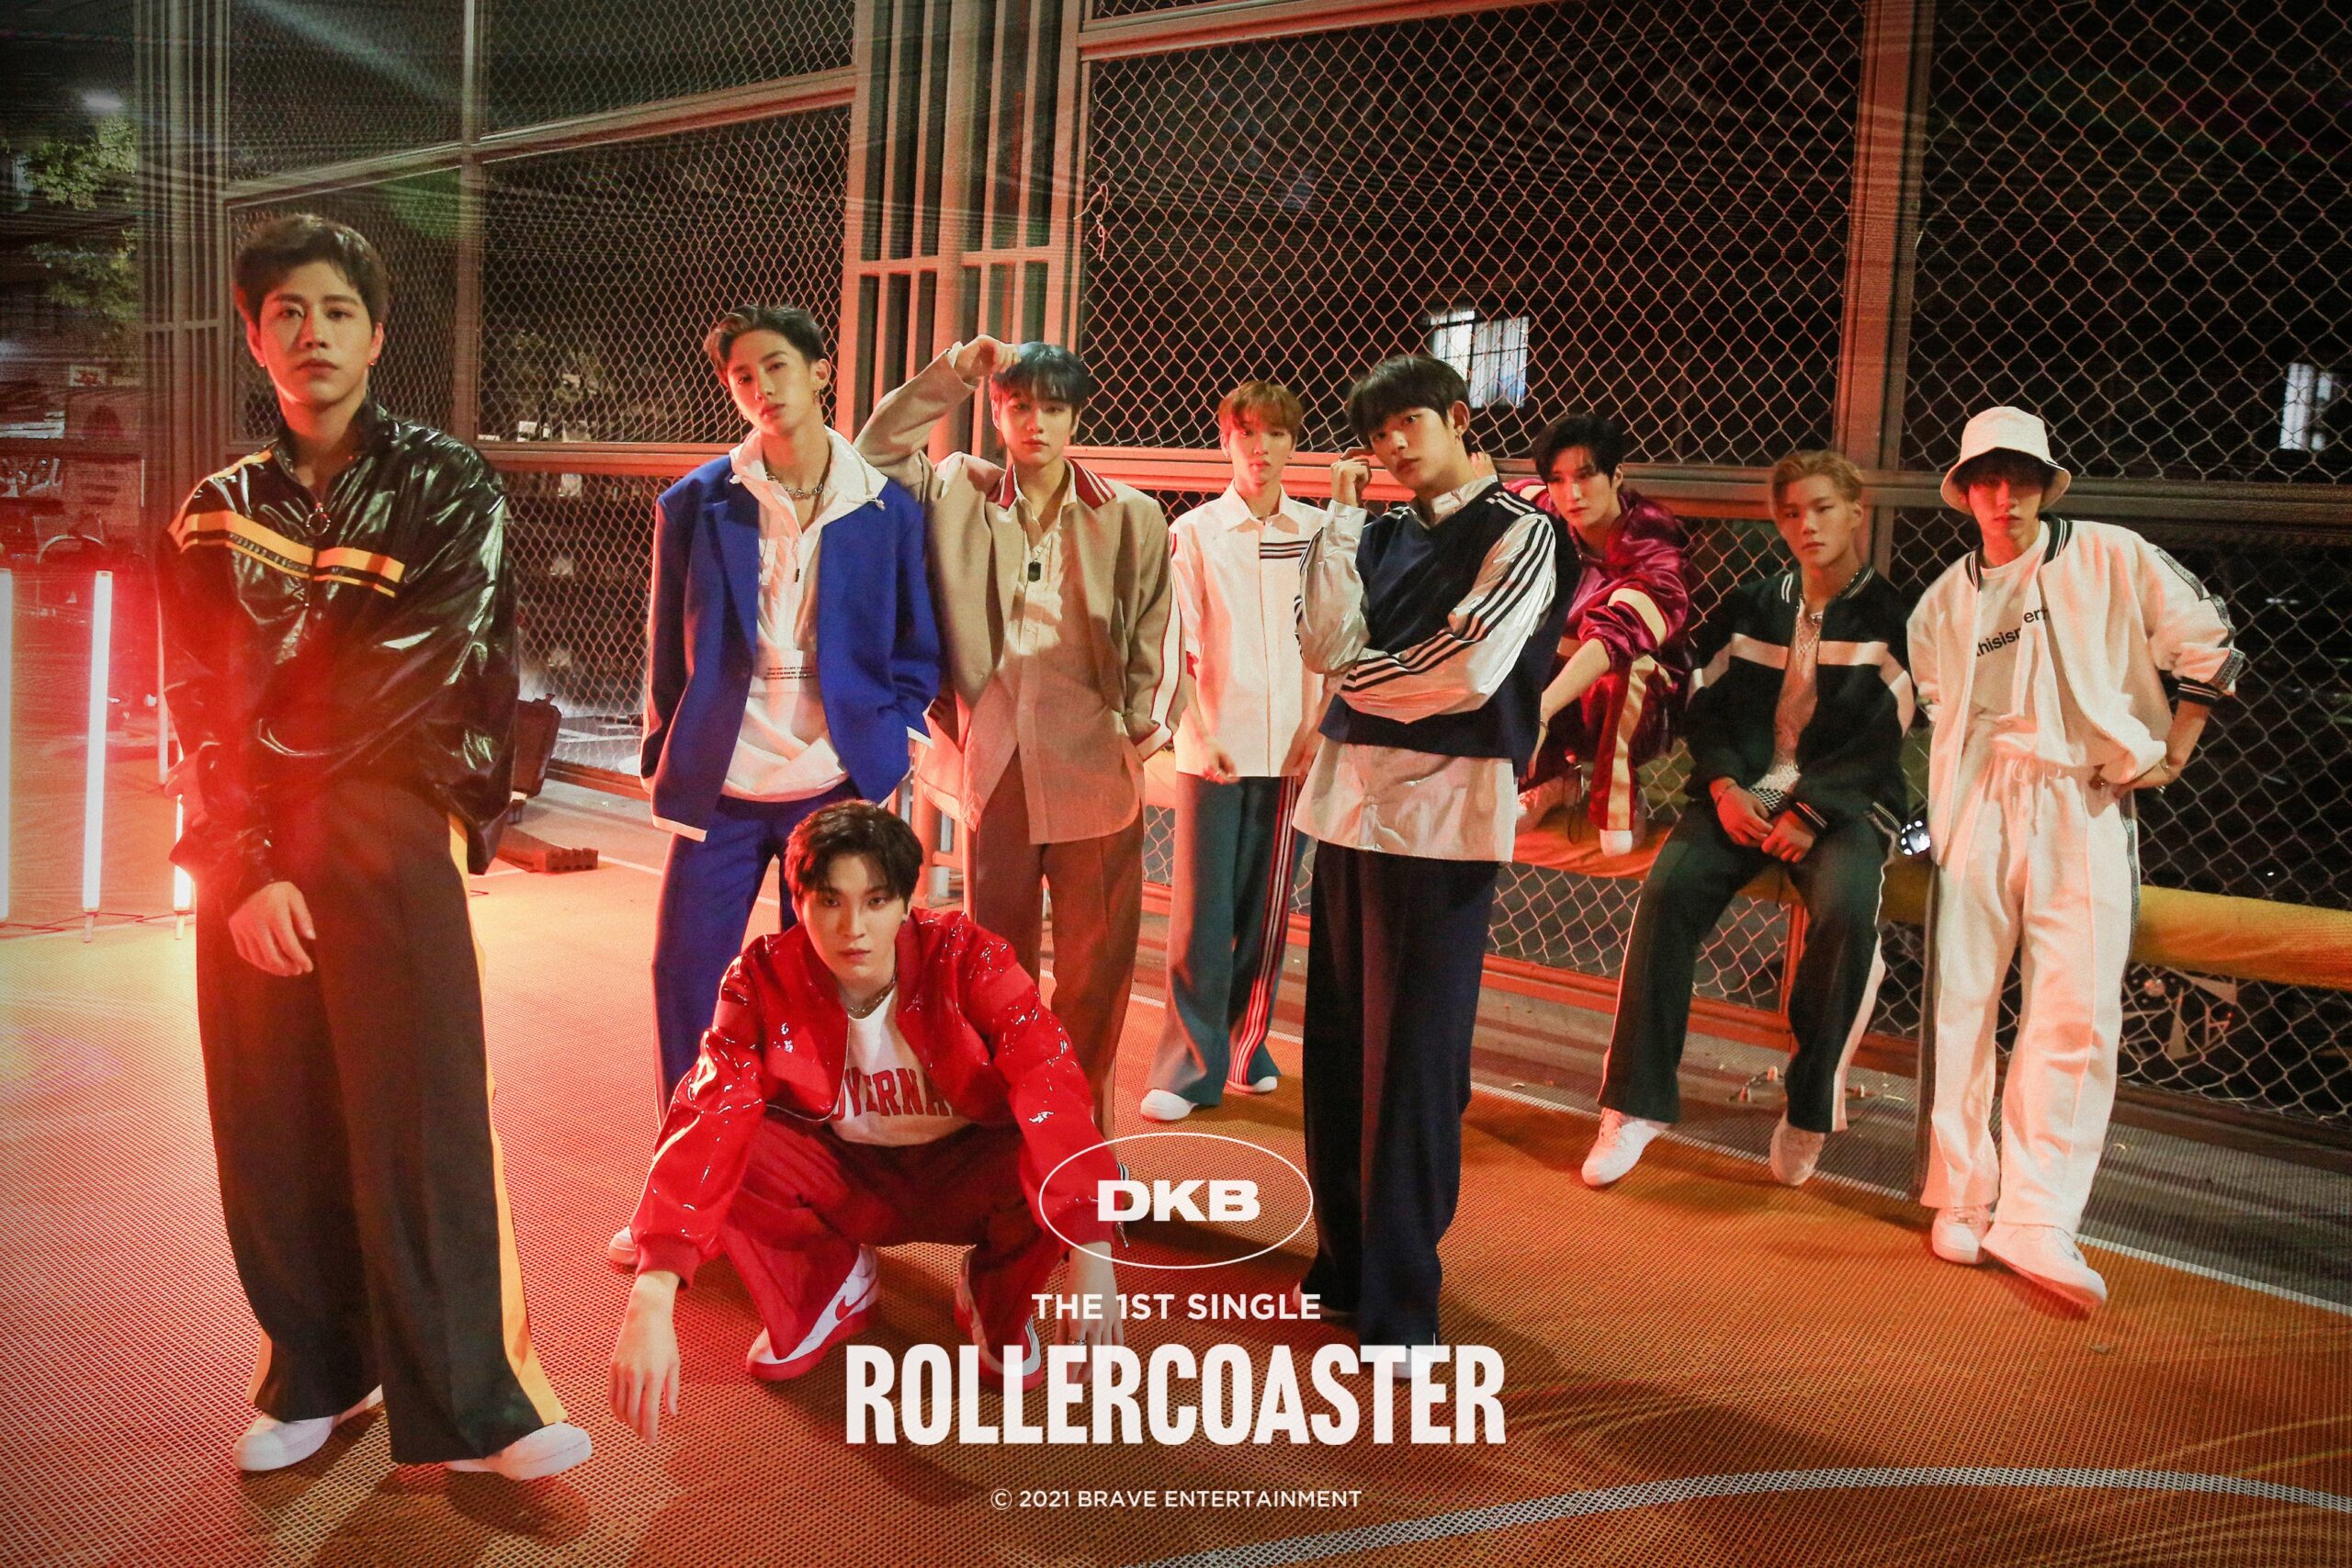 DKB estrena su single álbum ‘Rollercoaster’